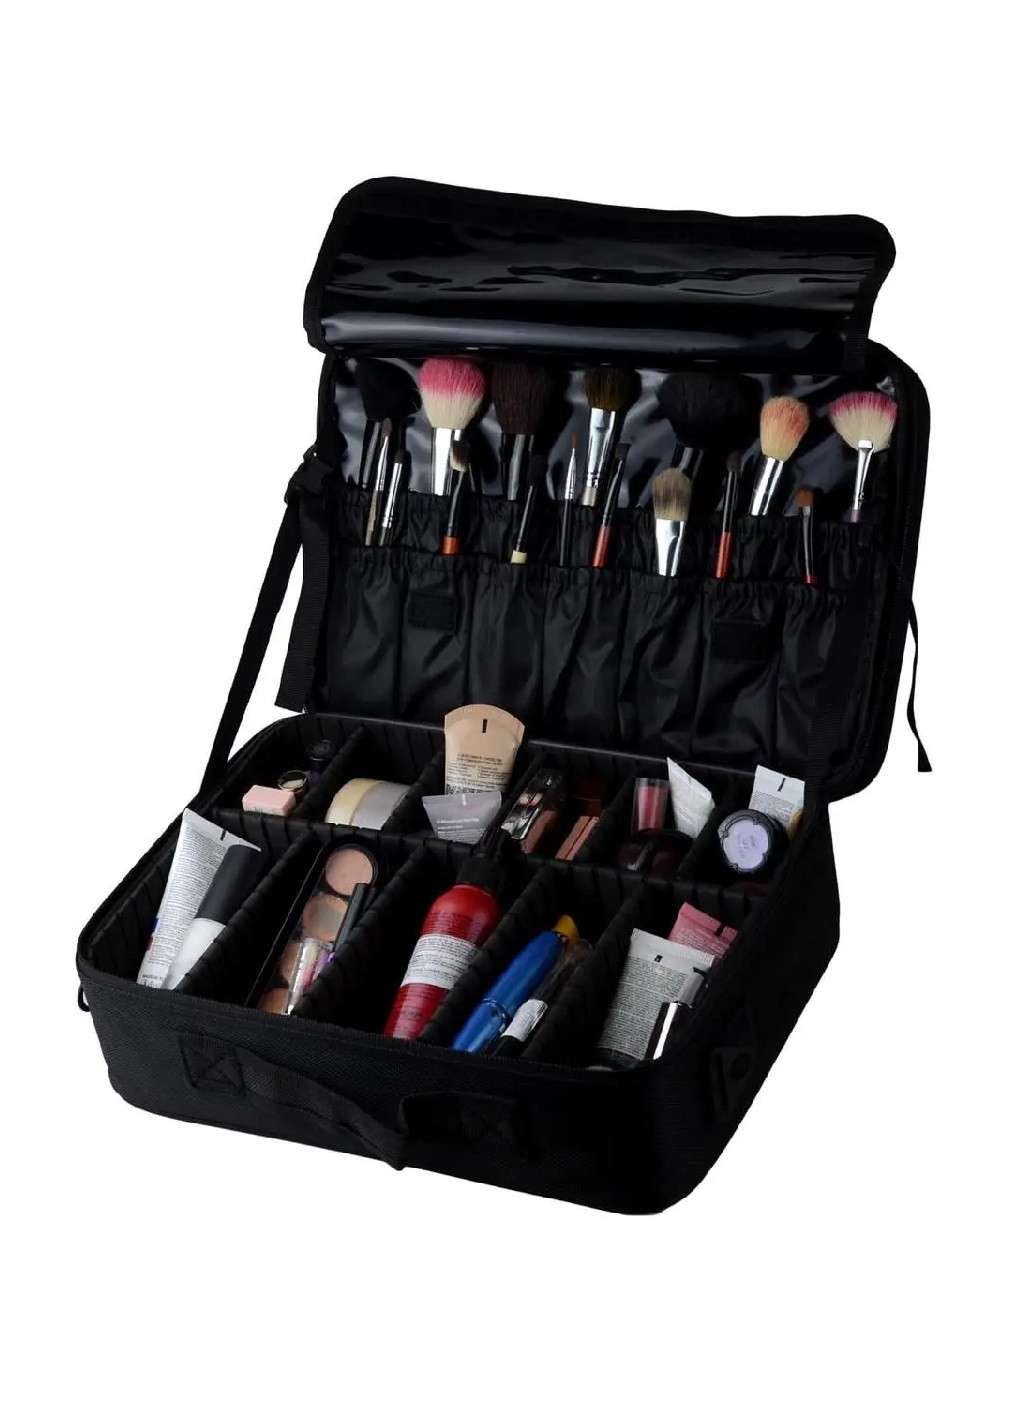 Органайзер бокс бьюті кейс косметичка валіза сумка для зберігання косметики та аксесуарів 37х26х13 см (475110-Prob) Чорний Unbranded (262083041)